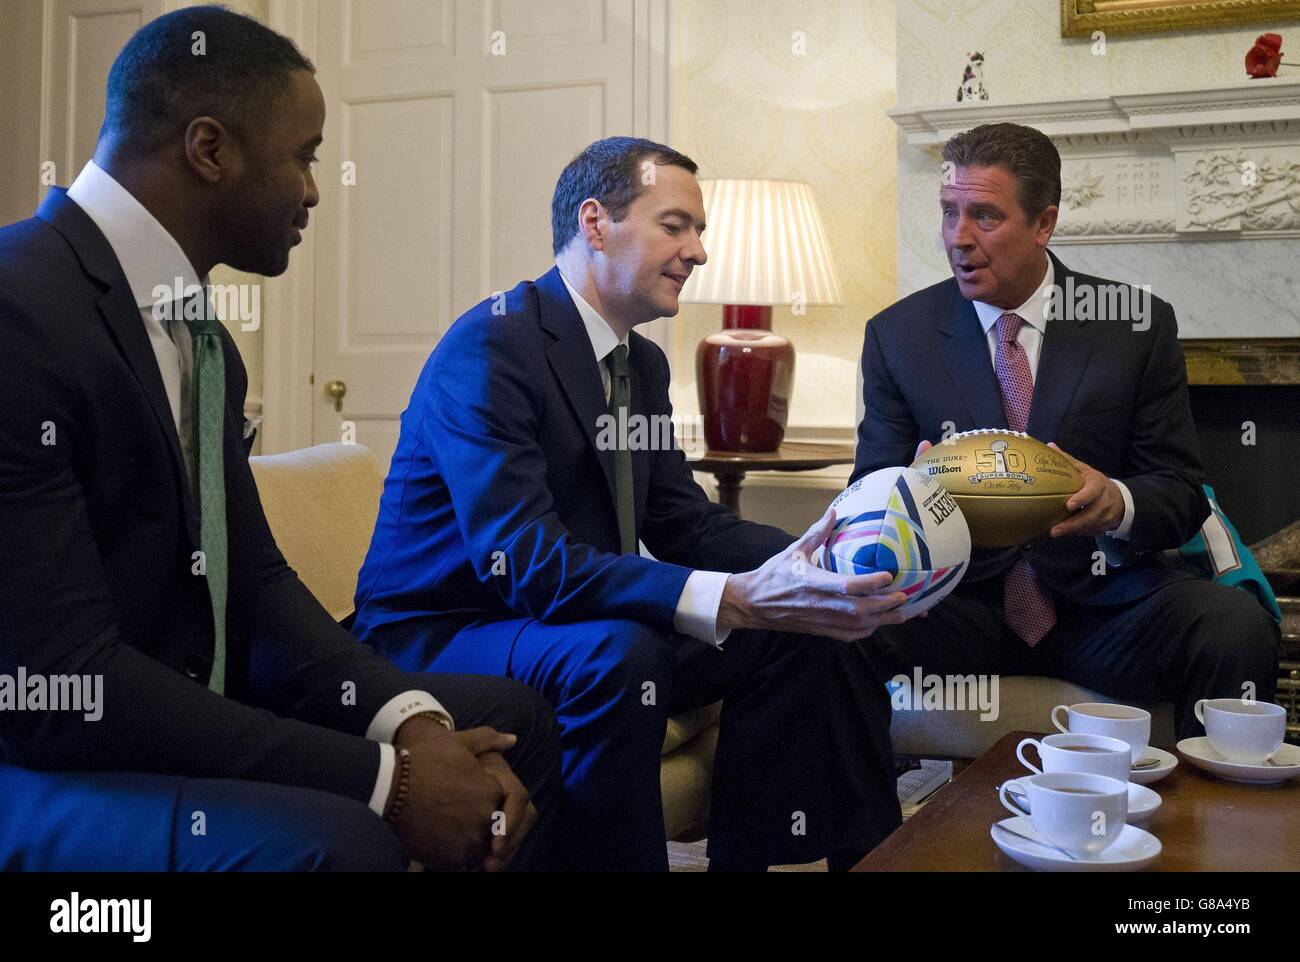 Il Cancelliere dello scacchiere George Osborne incontra gli ex calciatori americani Dan Marino (a destra) e Curtis Martin durante il loro incontro all'interno di 11 Downing Street a Londra, davanti ai Miami Dolphins che suonano i New York Jets al Wembley Stadium di domenica. Foto Stock